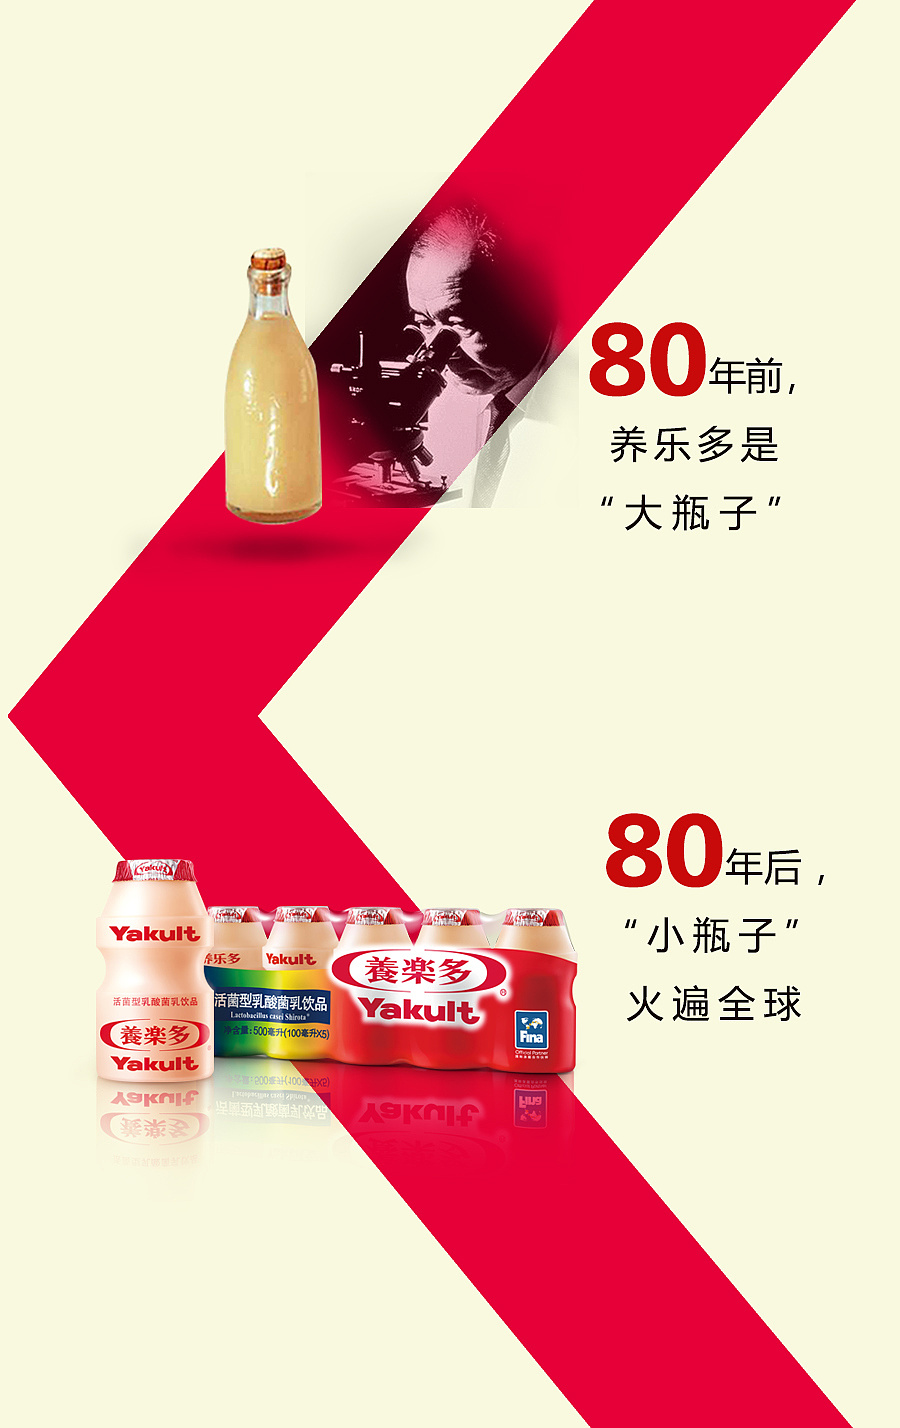 中国广告篇 - 养乐多图片